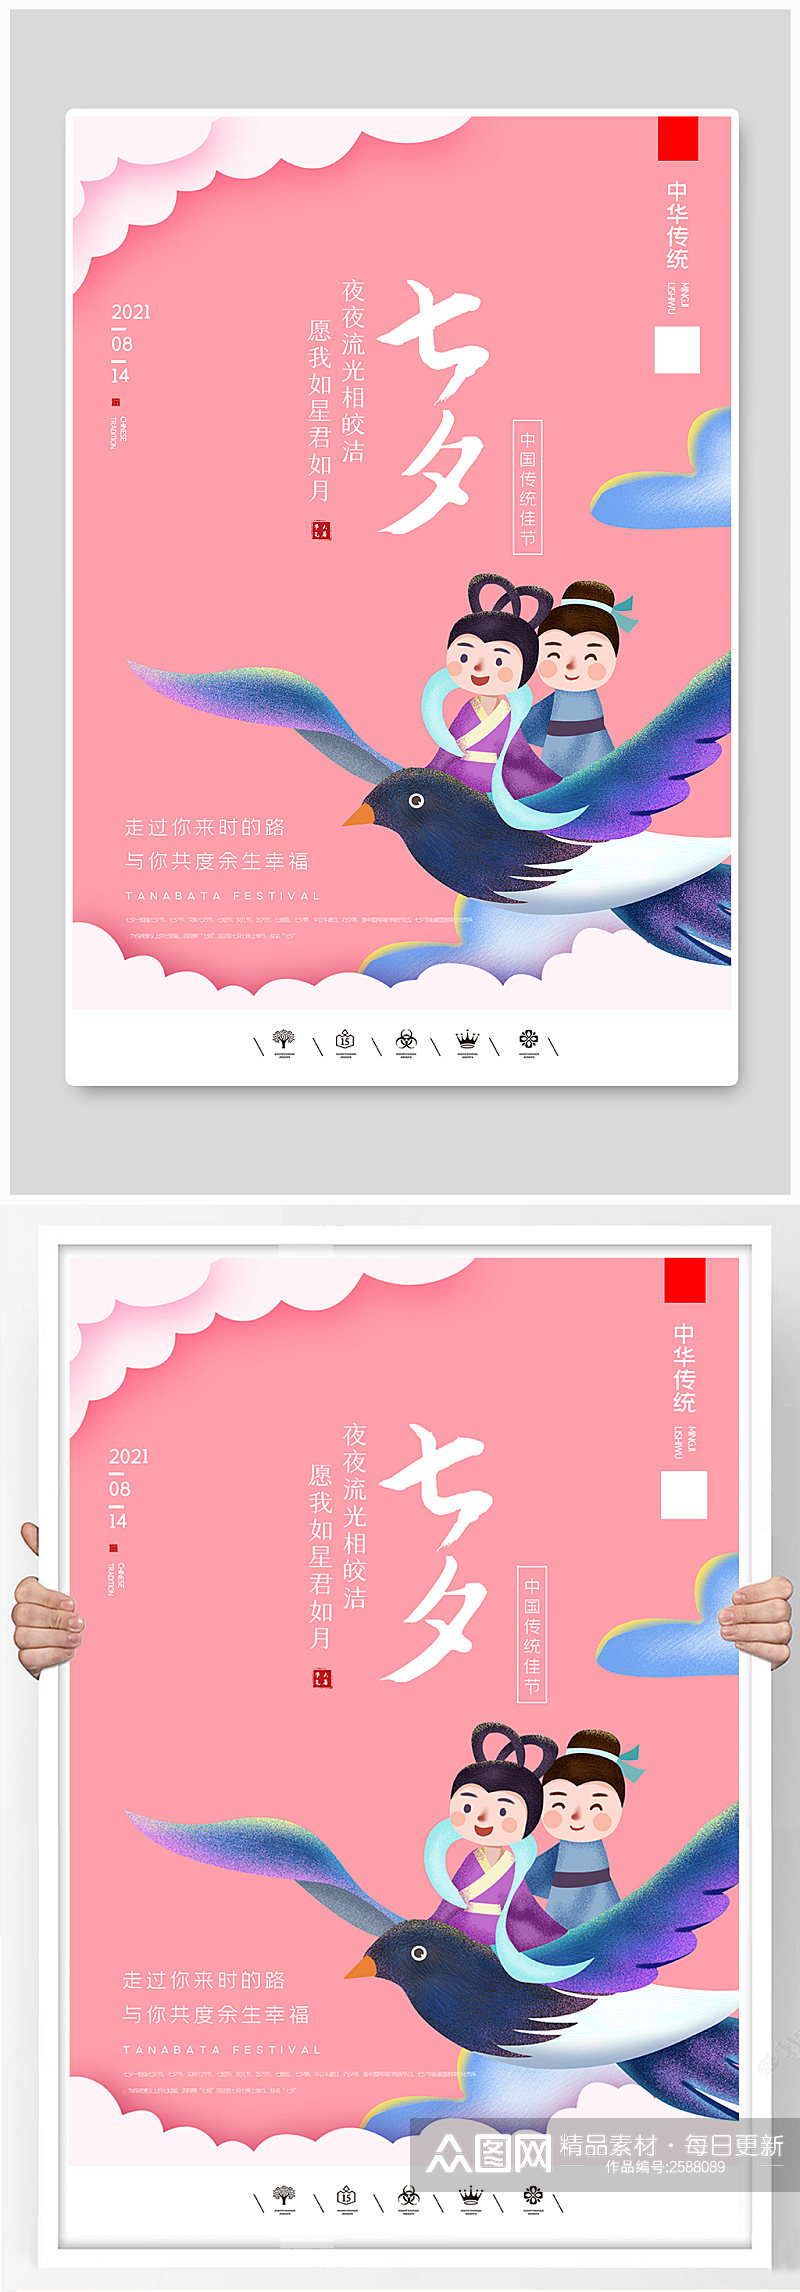 中国风卡通风格七夕情人节户外海报素材